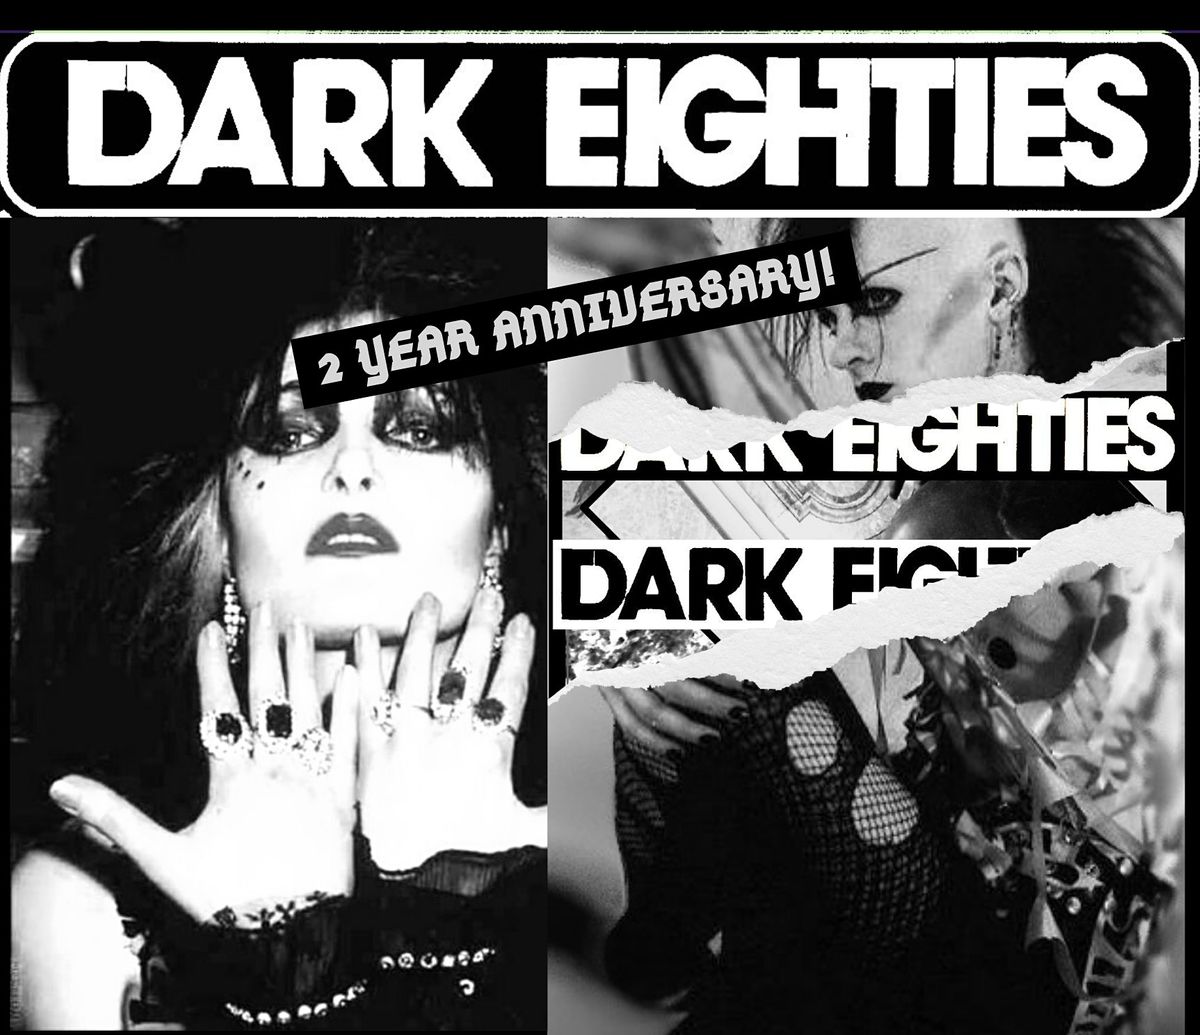 The Dark Eighties: 2 Year Anniversary